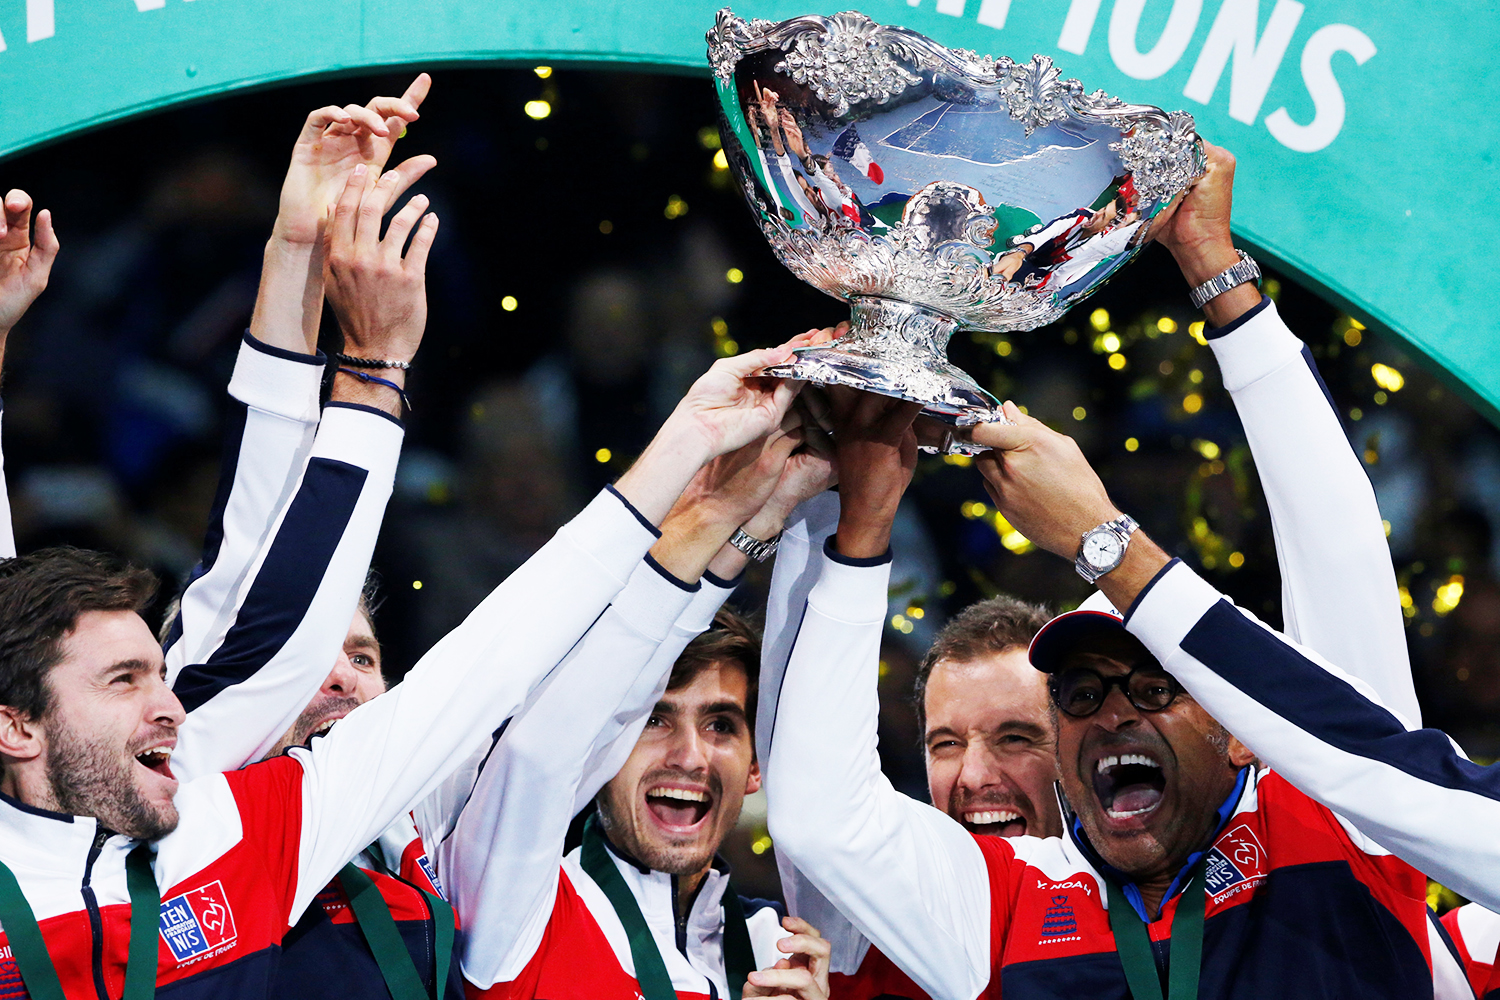 Tênis: Madri será sede da reformulada Copa Davis em 2019 e 2020